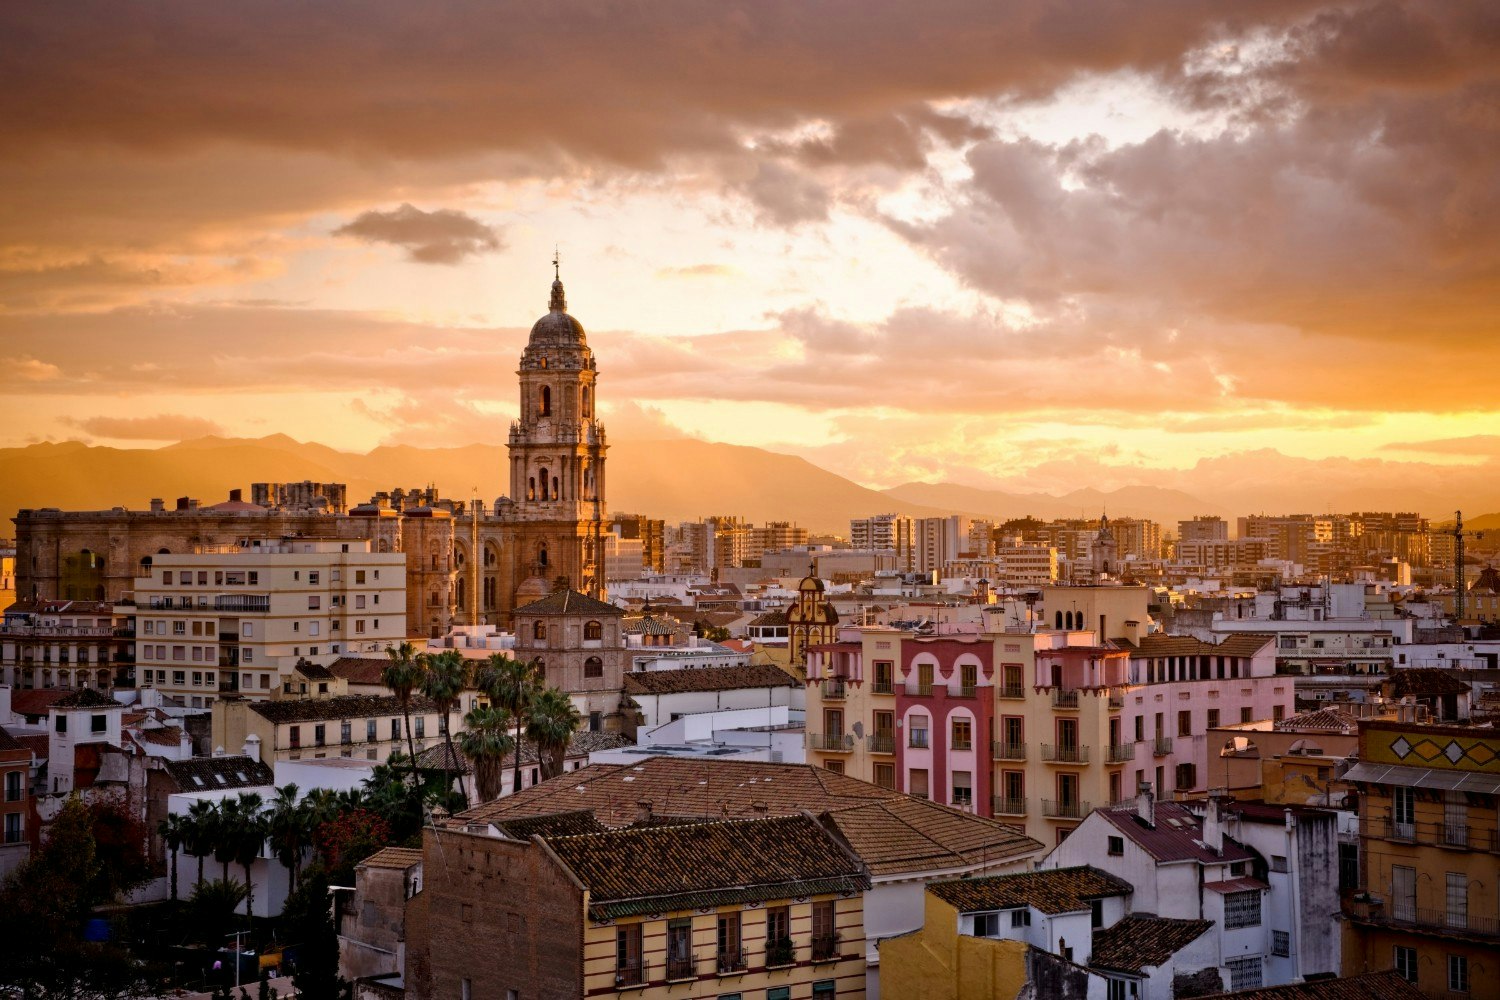 A view of Malaga at sunset